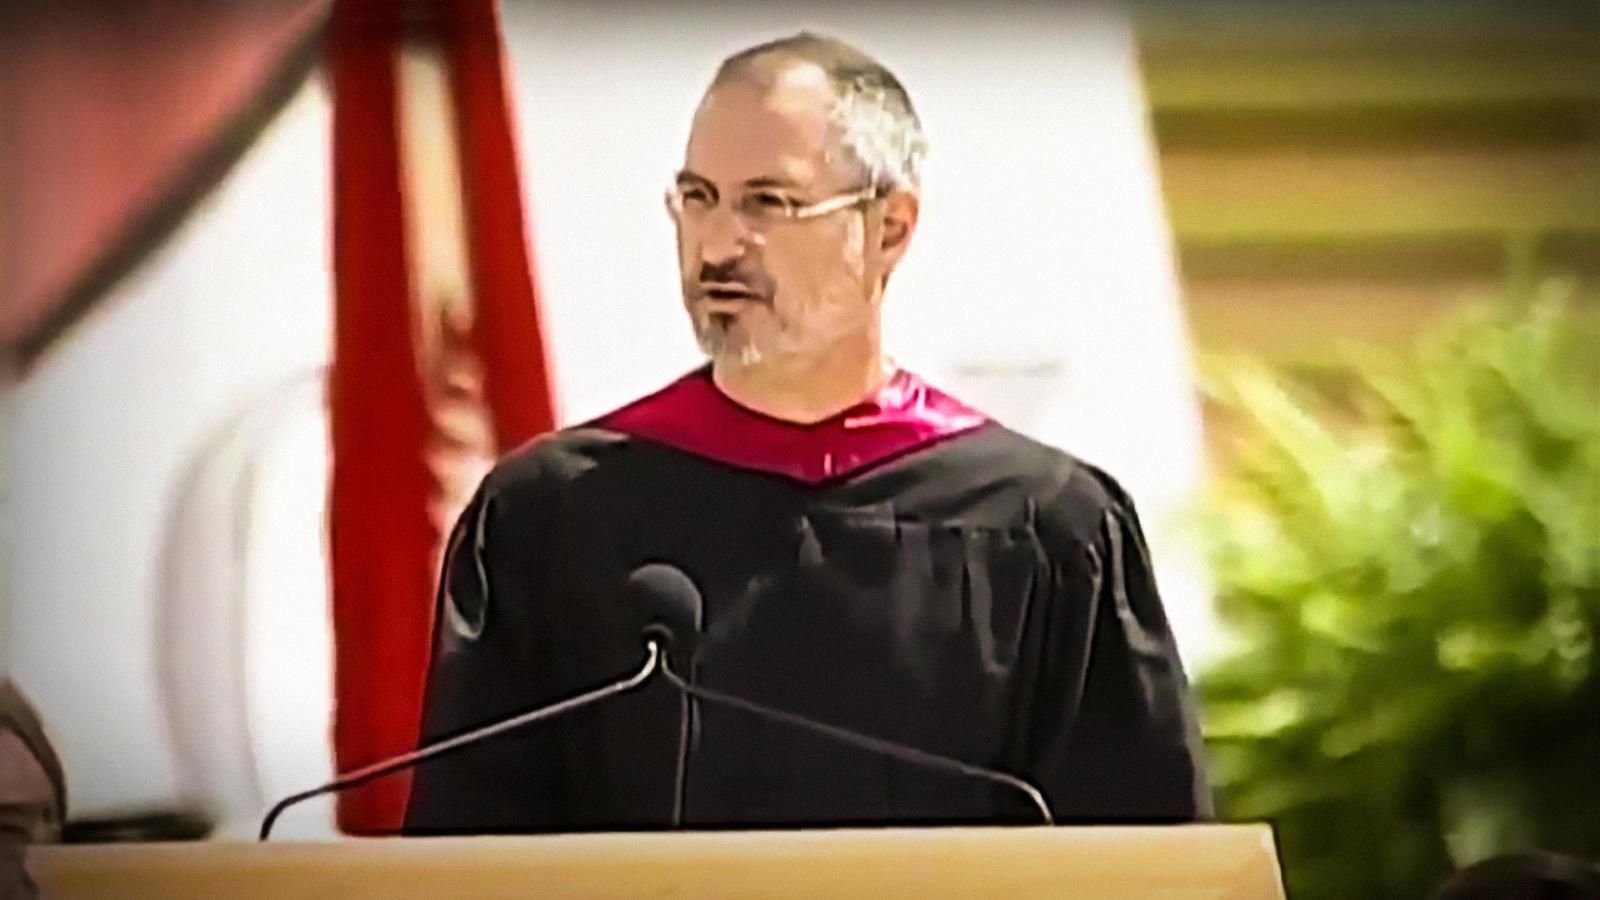 Discours de Steve Jobs à Harvard 3 histoires